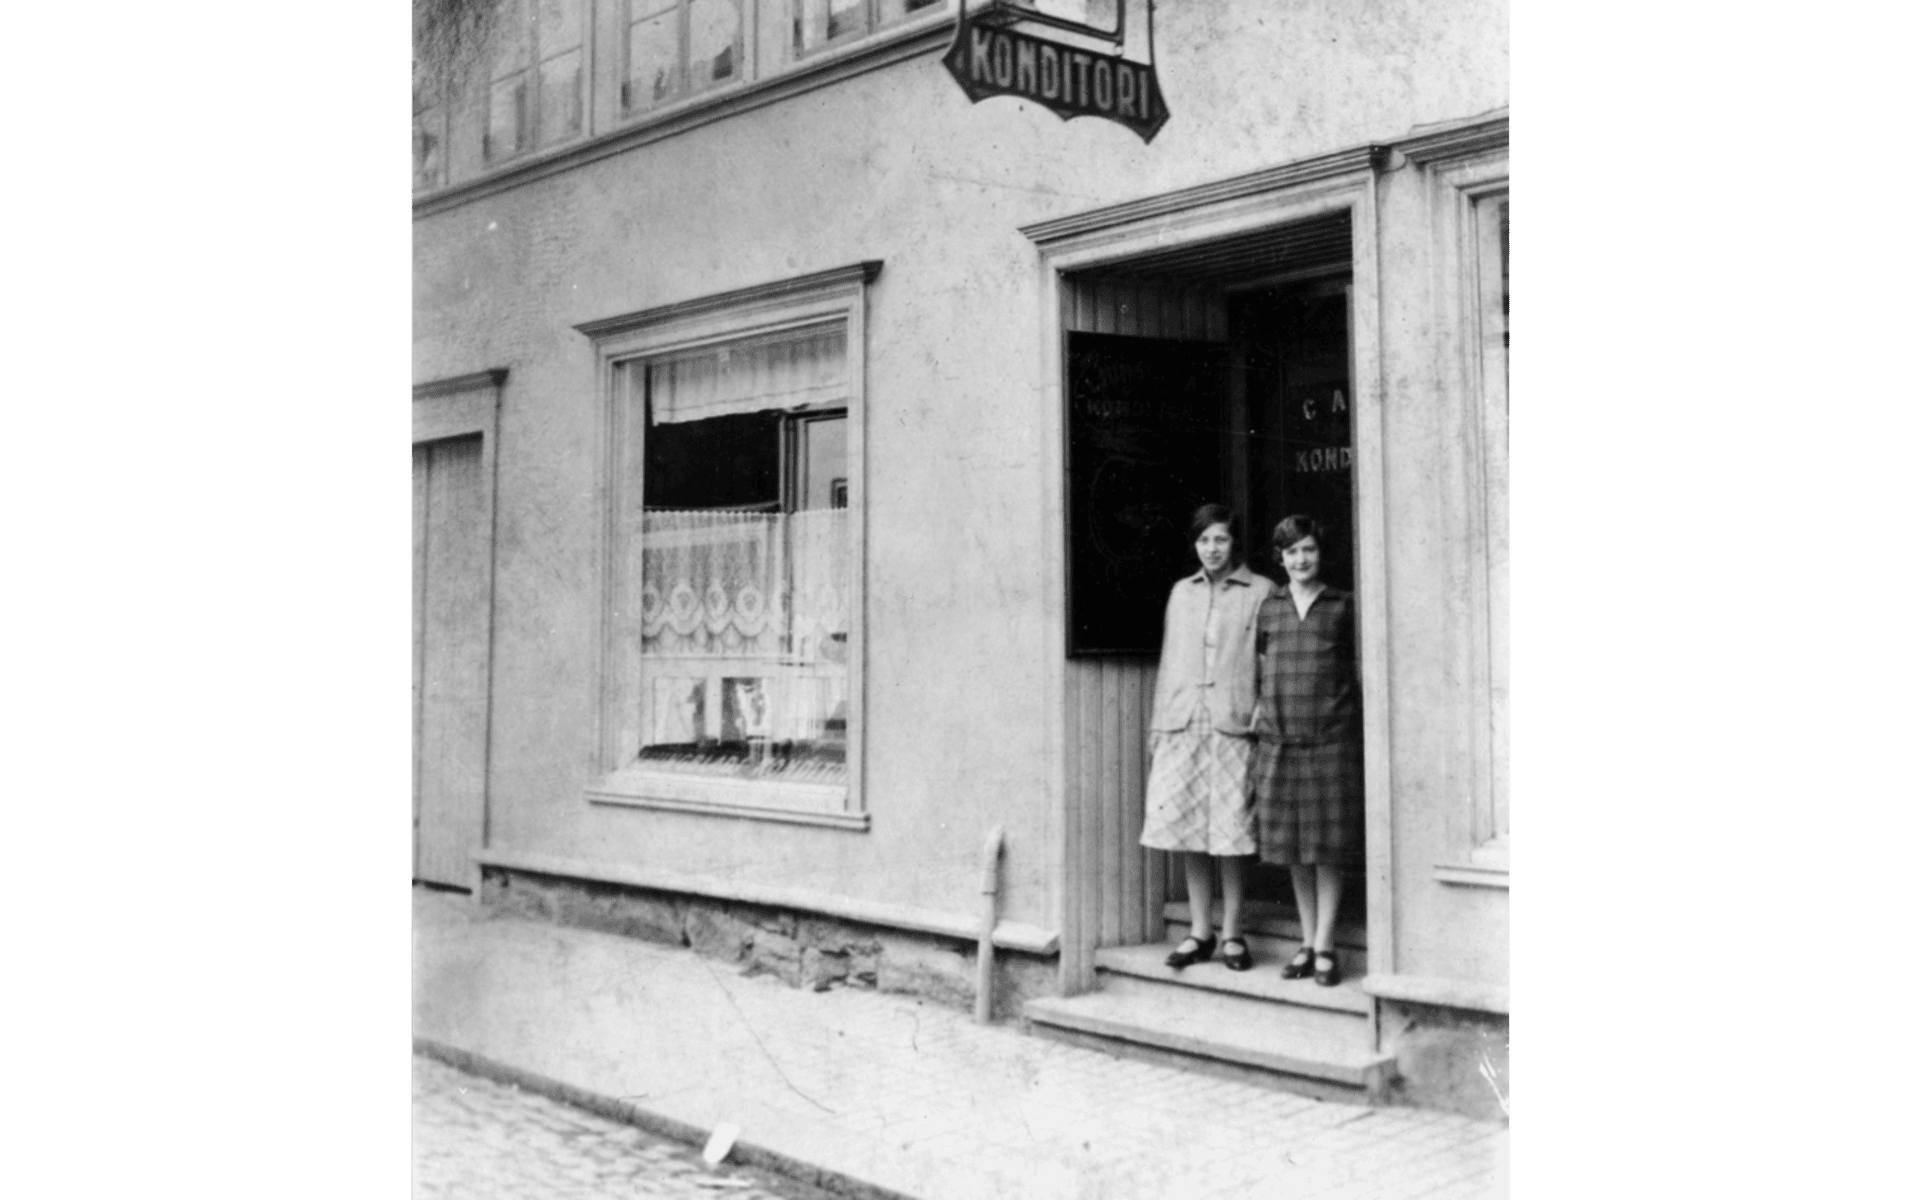 Ljungblads konditori på Kungsgatan, kvarteret Hjorten 3. Två kvinnor står i entrén. Till vänster Judith Ljungblad, född Andersson. På 1930 talet flyttade konditoriet till Lilla torget och stängde 2017. Fotot från omkring 1920-talet.